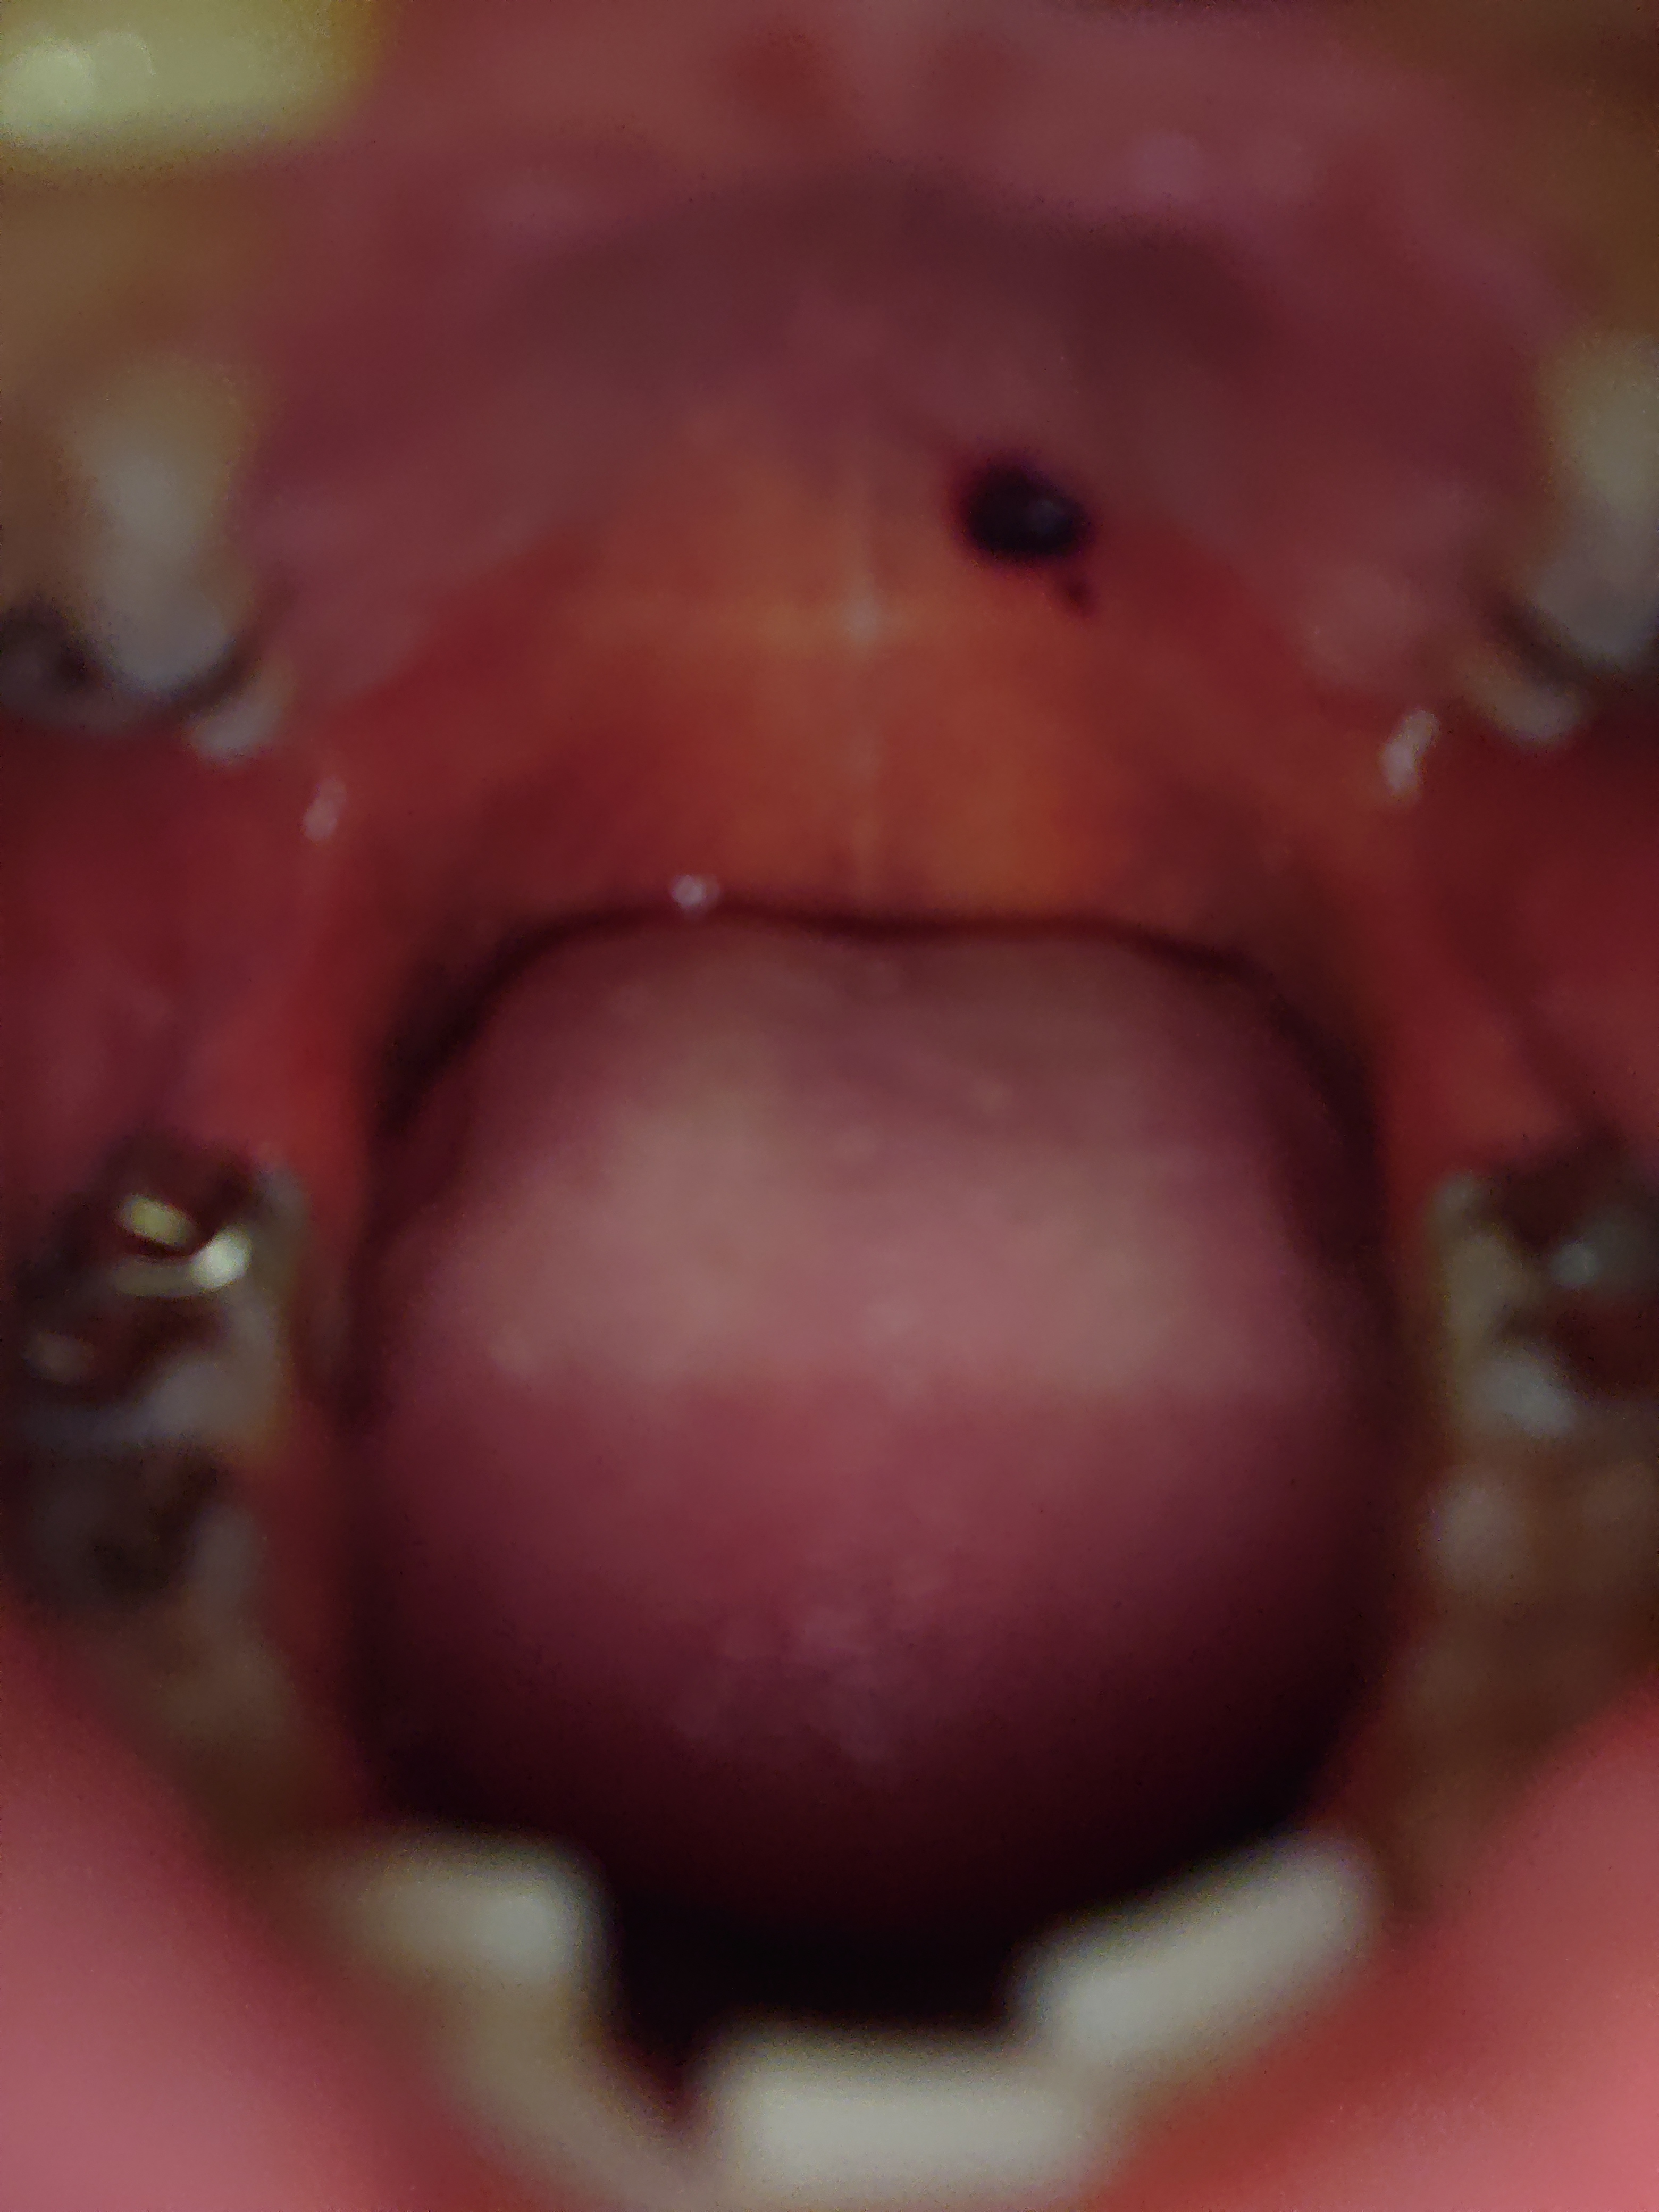 口内 血豆 口の中に血豆が突然できた 血袋の原因と対処方法